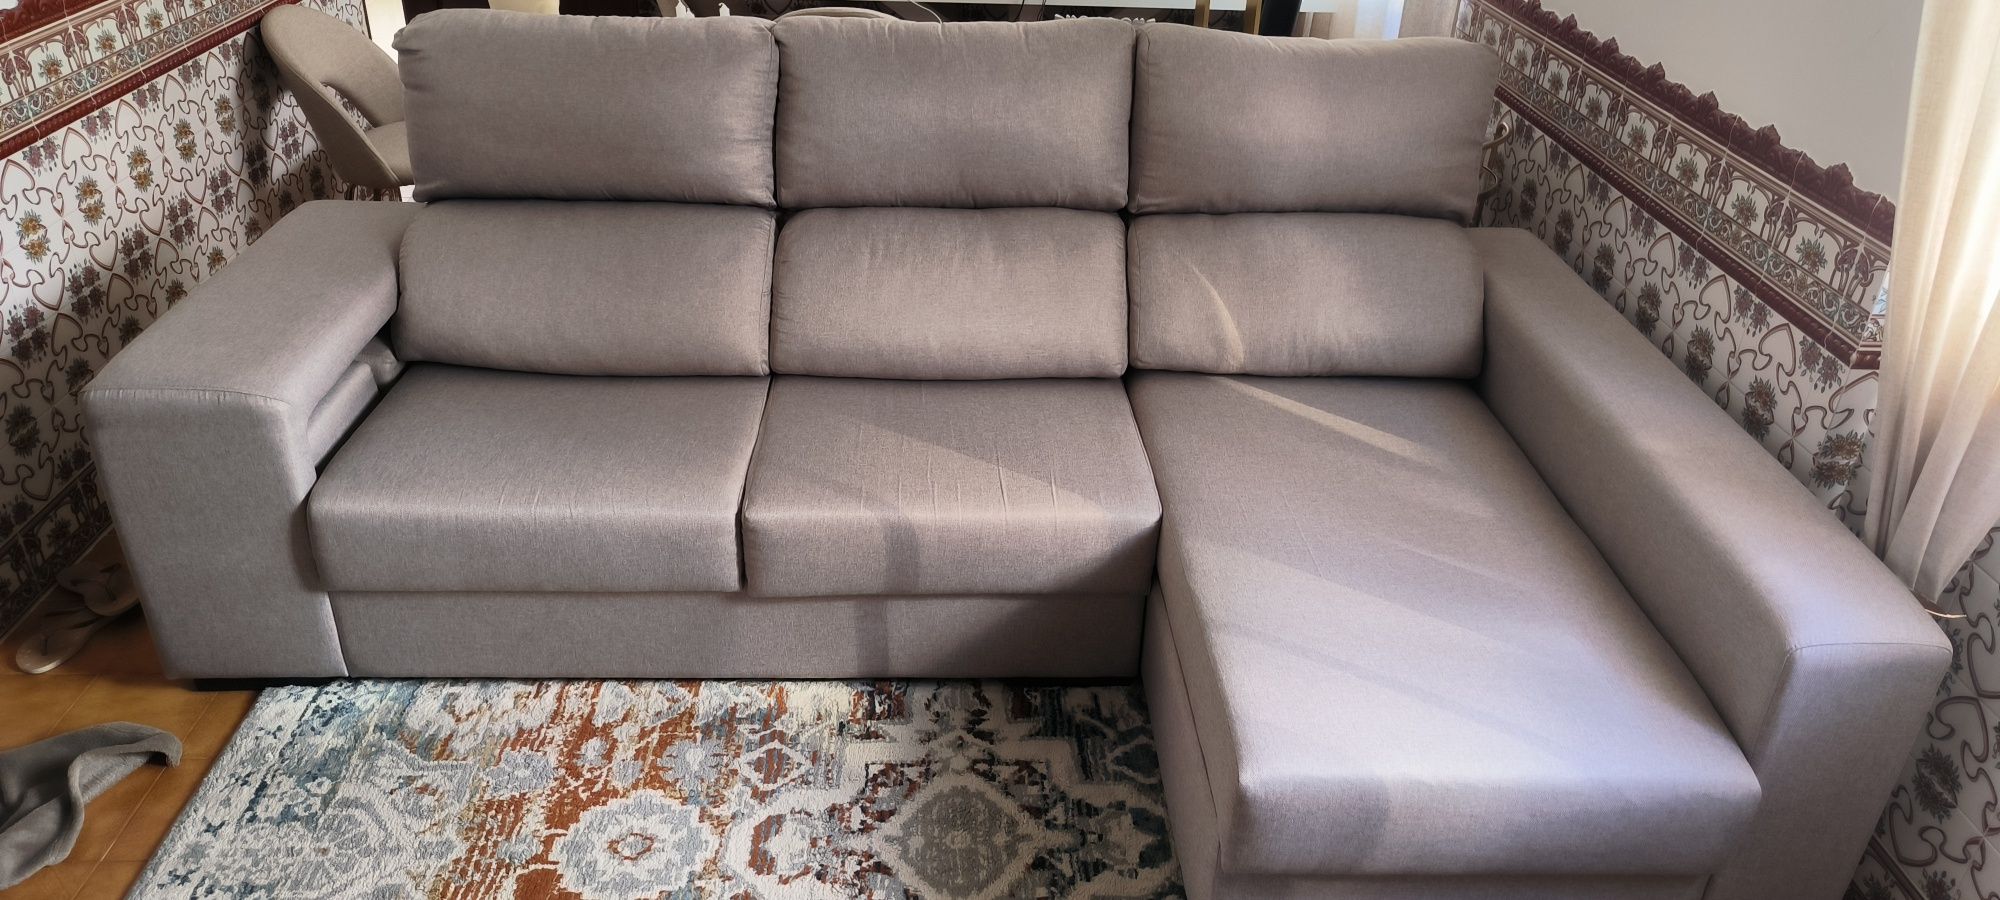 Sofá com chaise long+impermeabilização